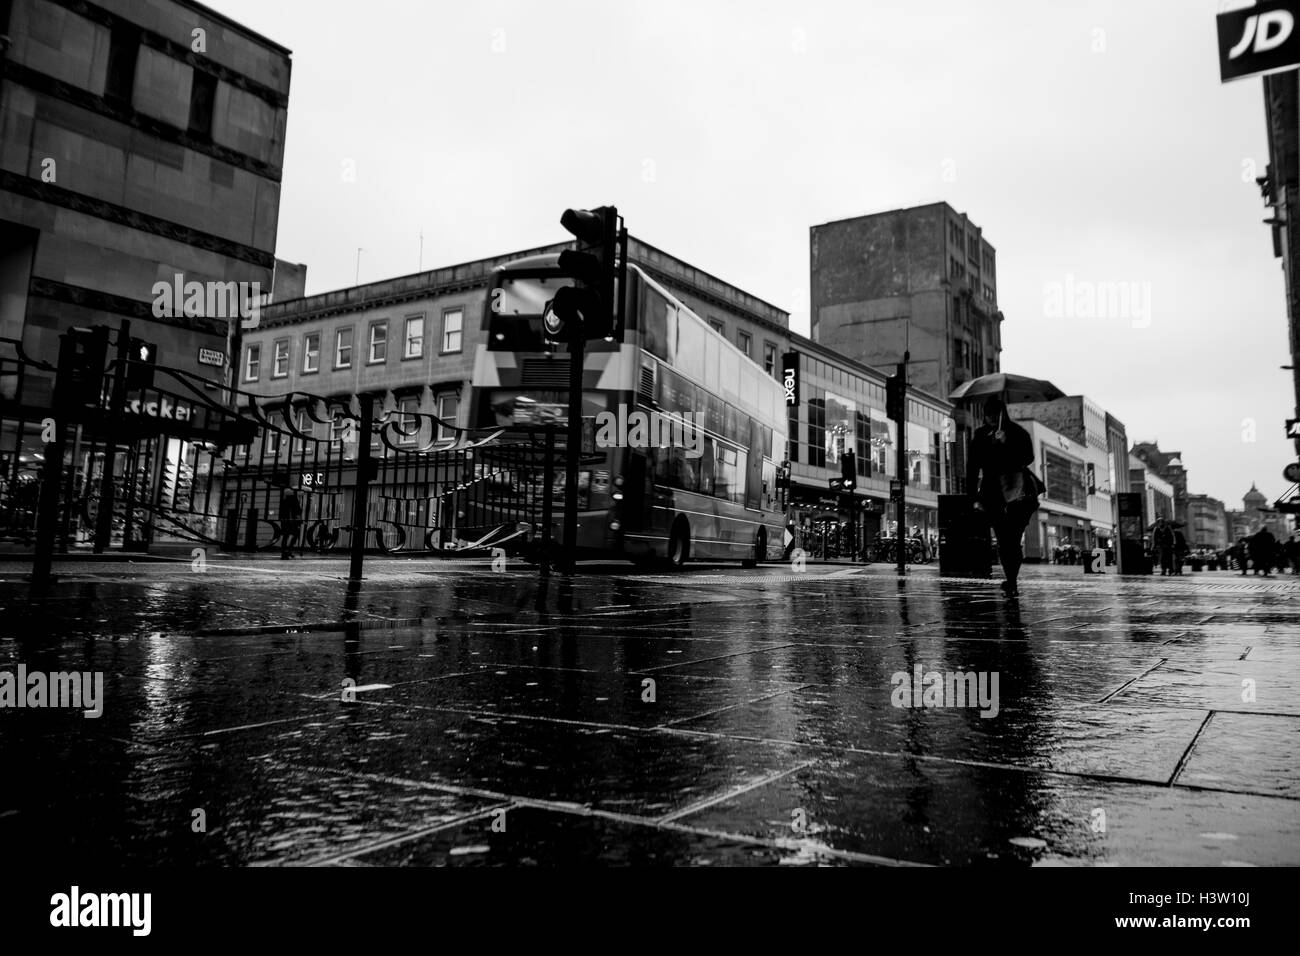 La fotografía de la calle, documentales, rush hour, ciudad, tráfico, Glasgow, Escocia, Foto de stock